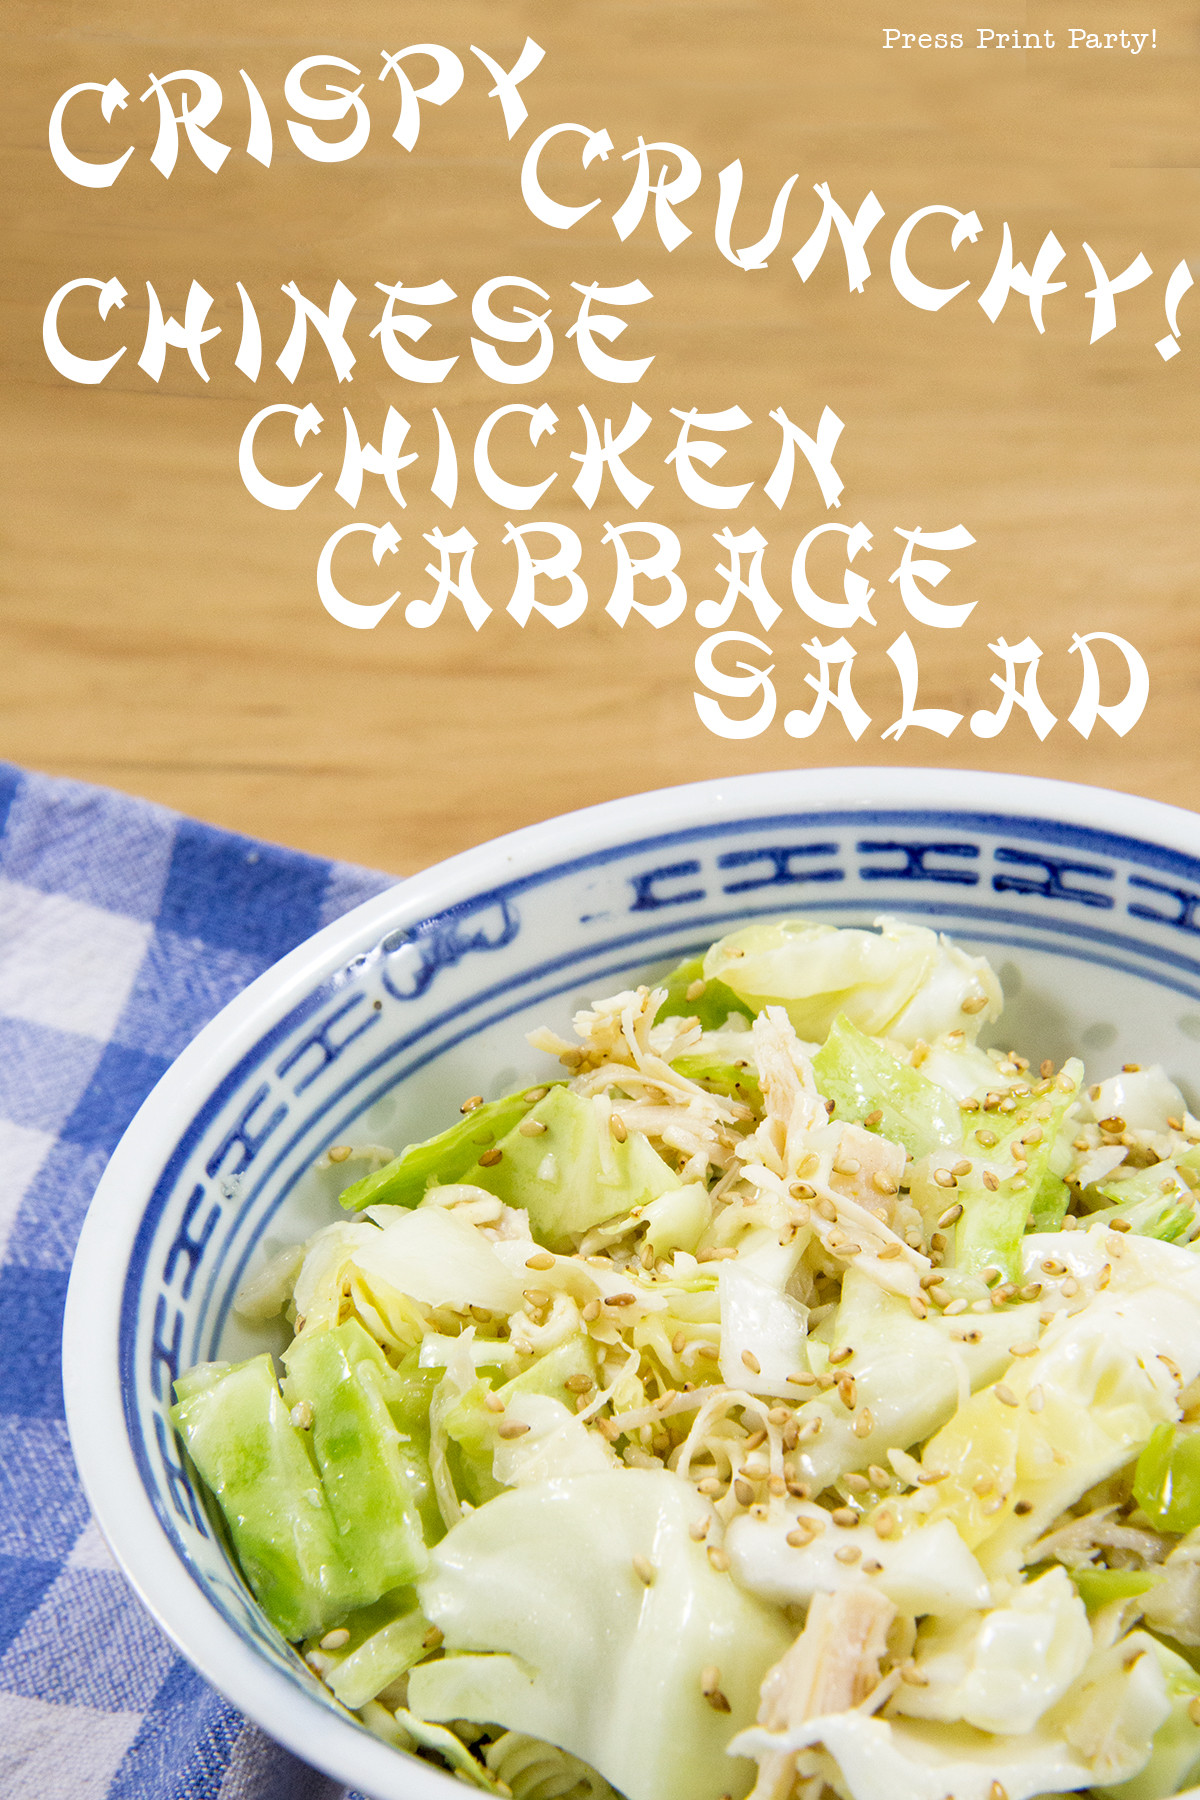 Chinese Chicken Cabbage Salad
 Crispy Crunchy Chinese Chicken Cabbage Salad Press Print